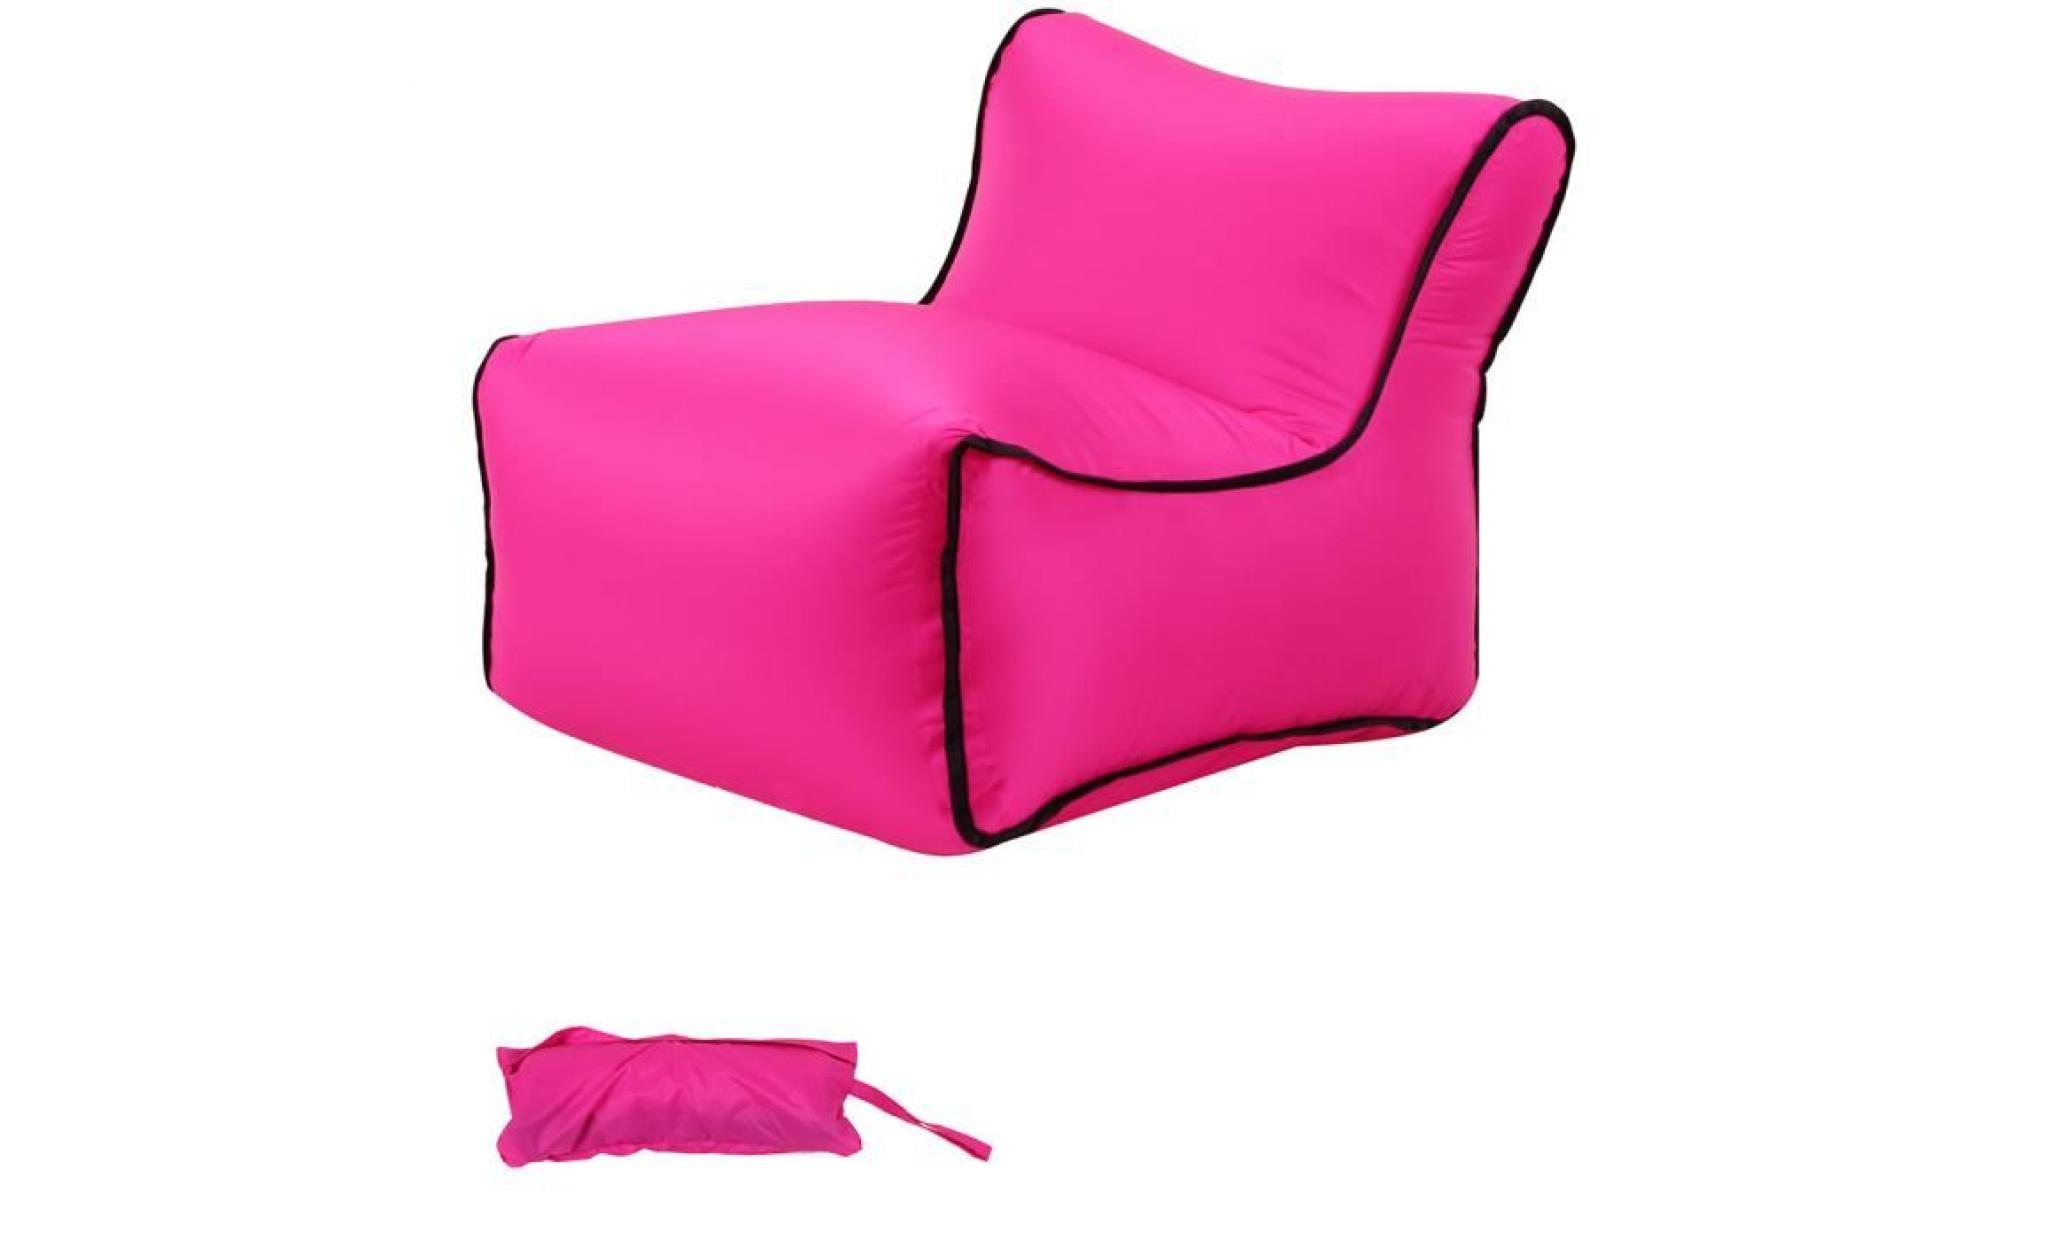 35x50x35cm 1pc chaise de jardin pliante plastique, chaise gonflable, chaise pliante camping, air canapé gonflable pliable rose fonce